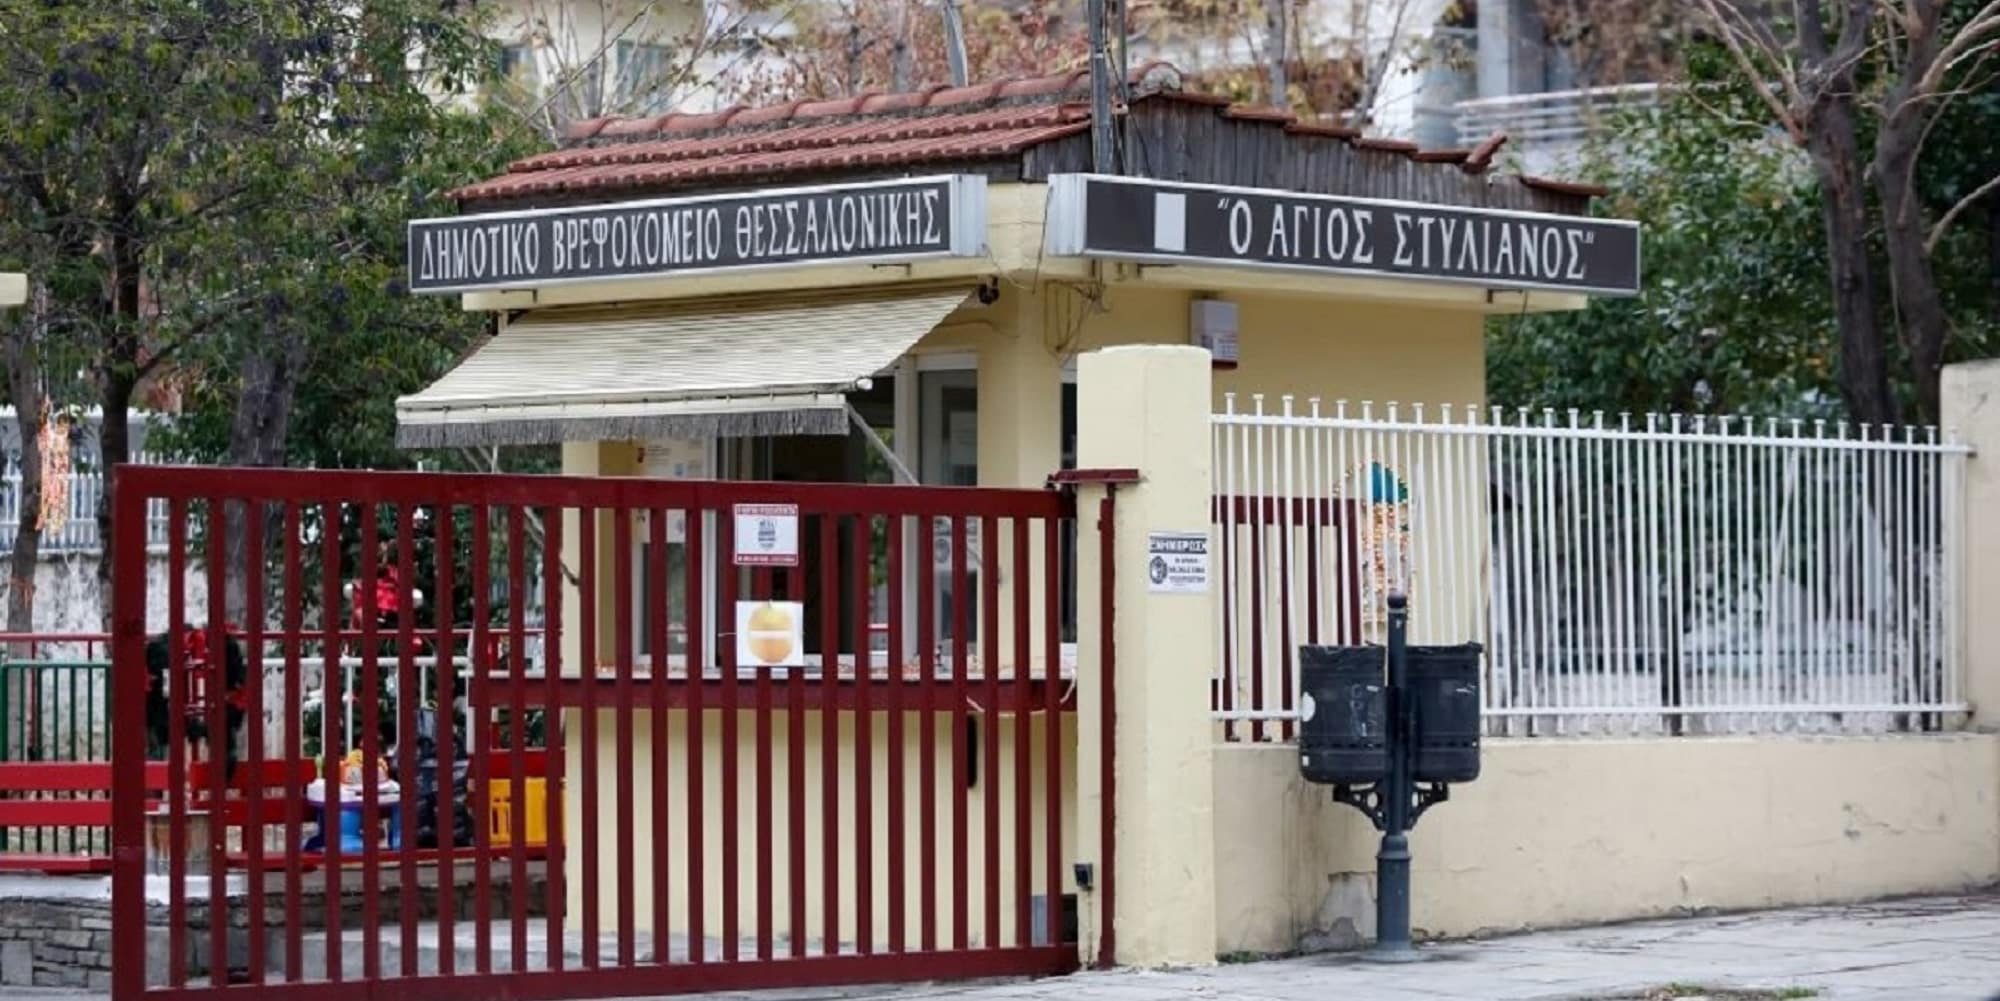 Το βρεφοκομείο Άγιος Στυλιανός στη Θεσσαλονίκη